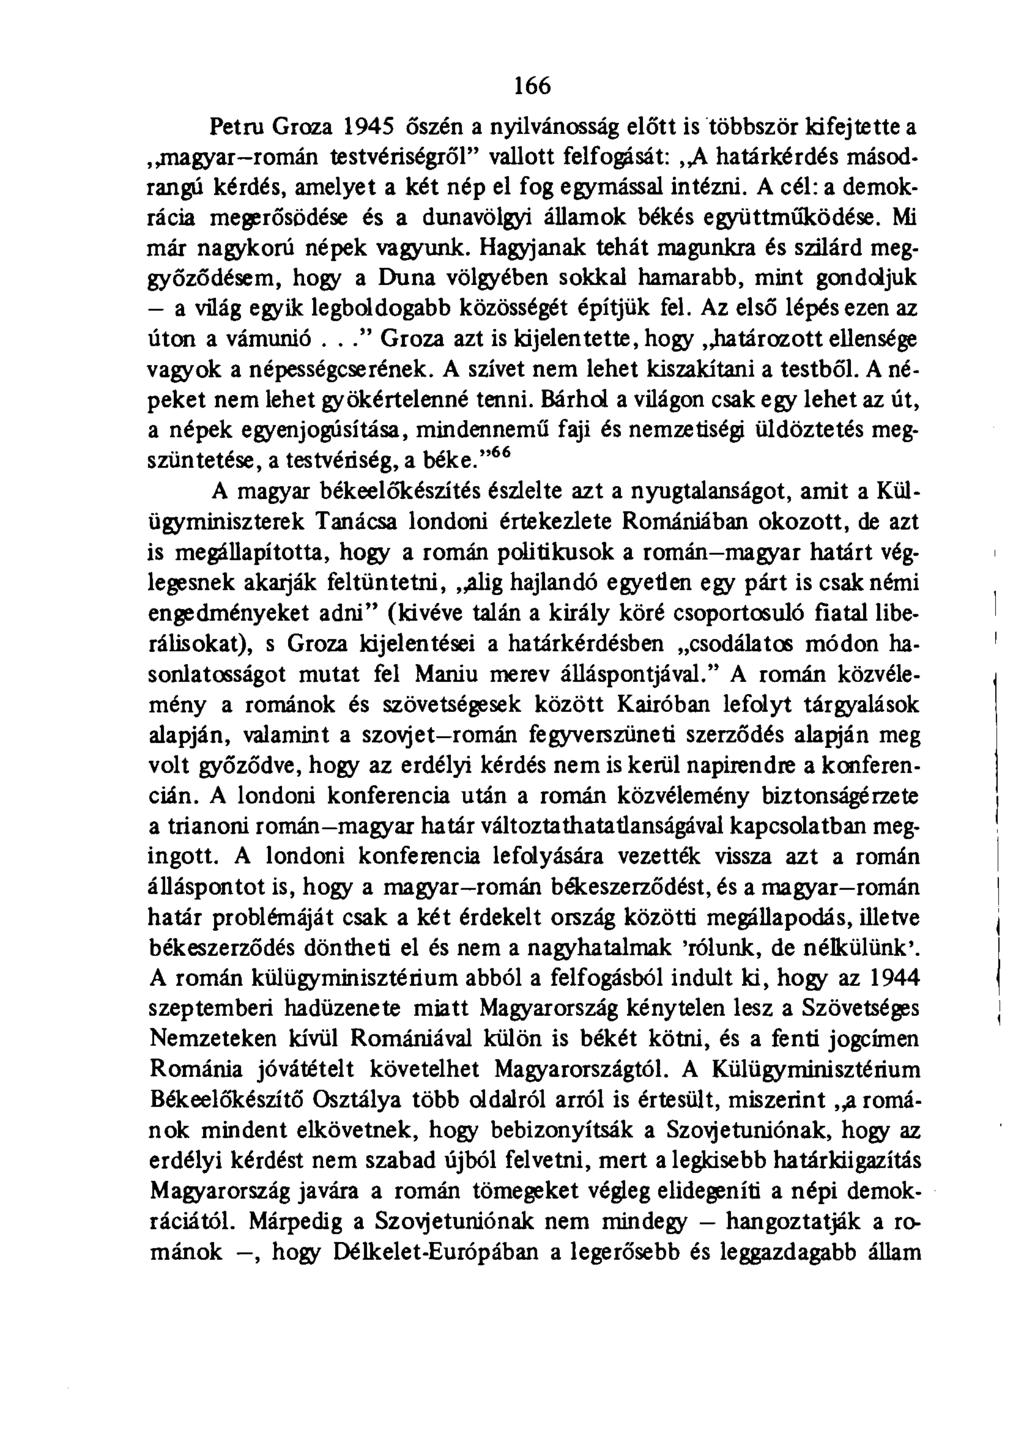 166 Petru Groza 1945 őszén a nyilvánosság előtt is többször kifejtette a,.magyar-román testvériségről" vallott felfogását:,,a határkérdés másodrangú kérdés, amelyet a két nép el fog egymással intézni.